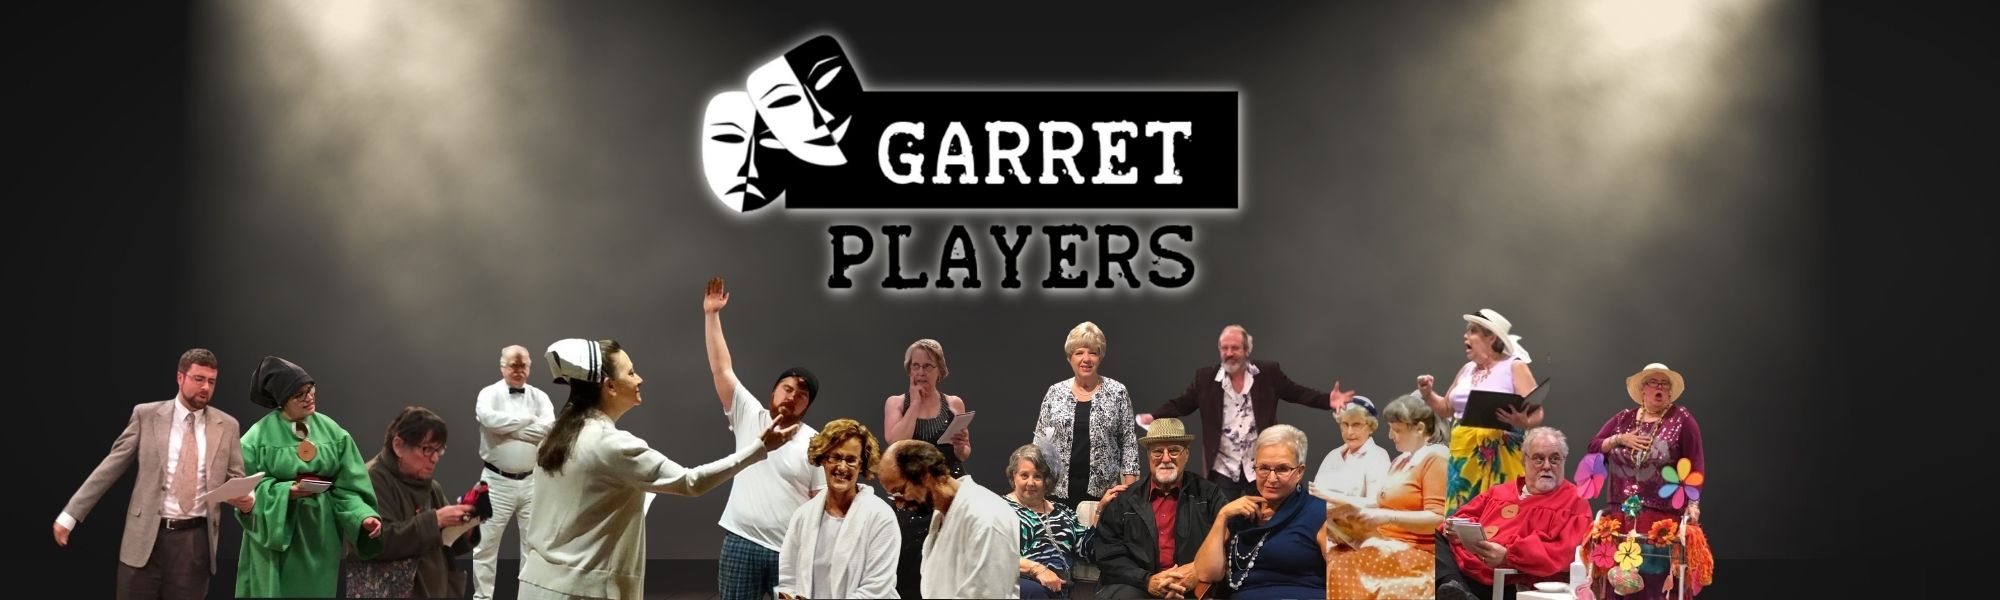 Garret Player Members Acting